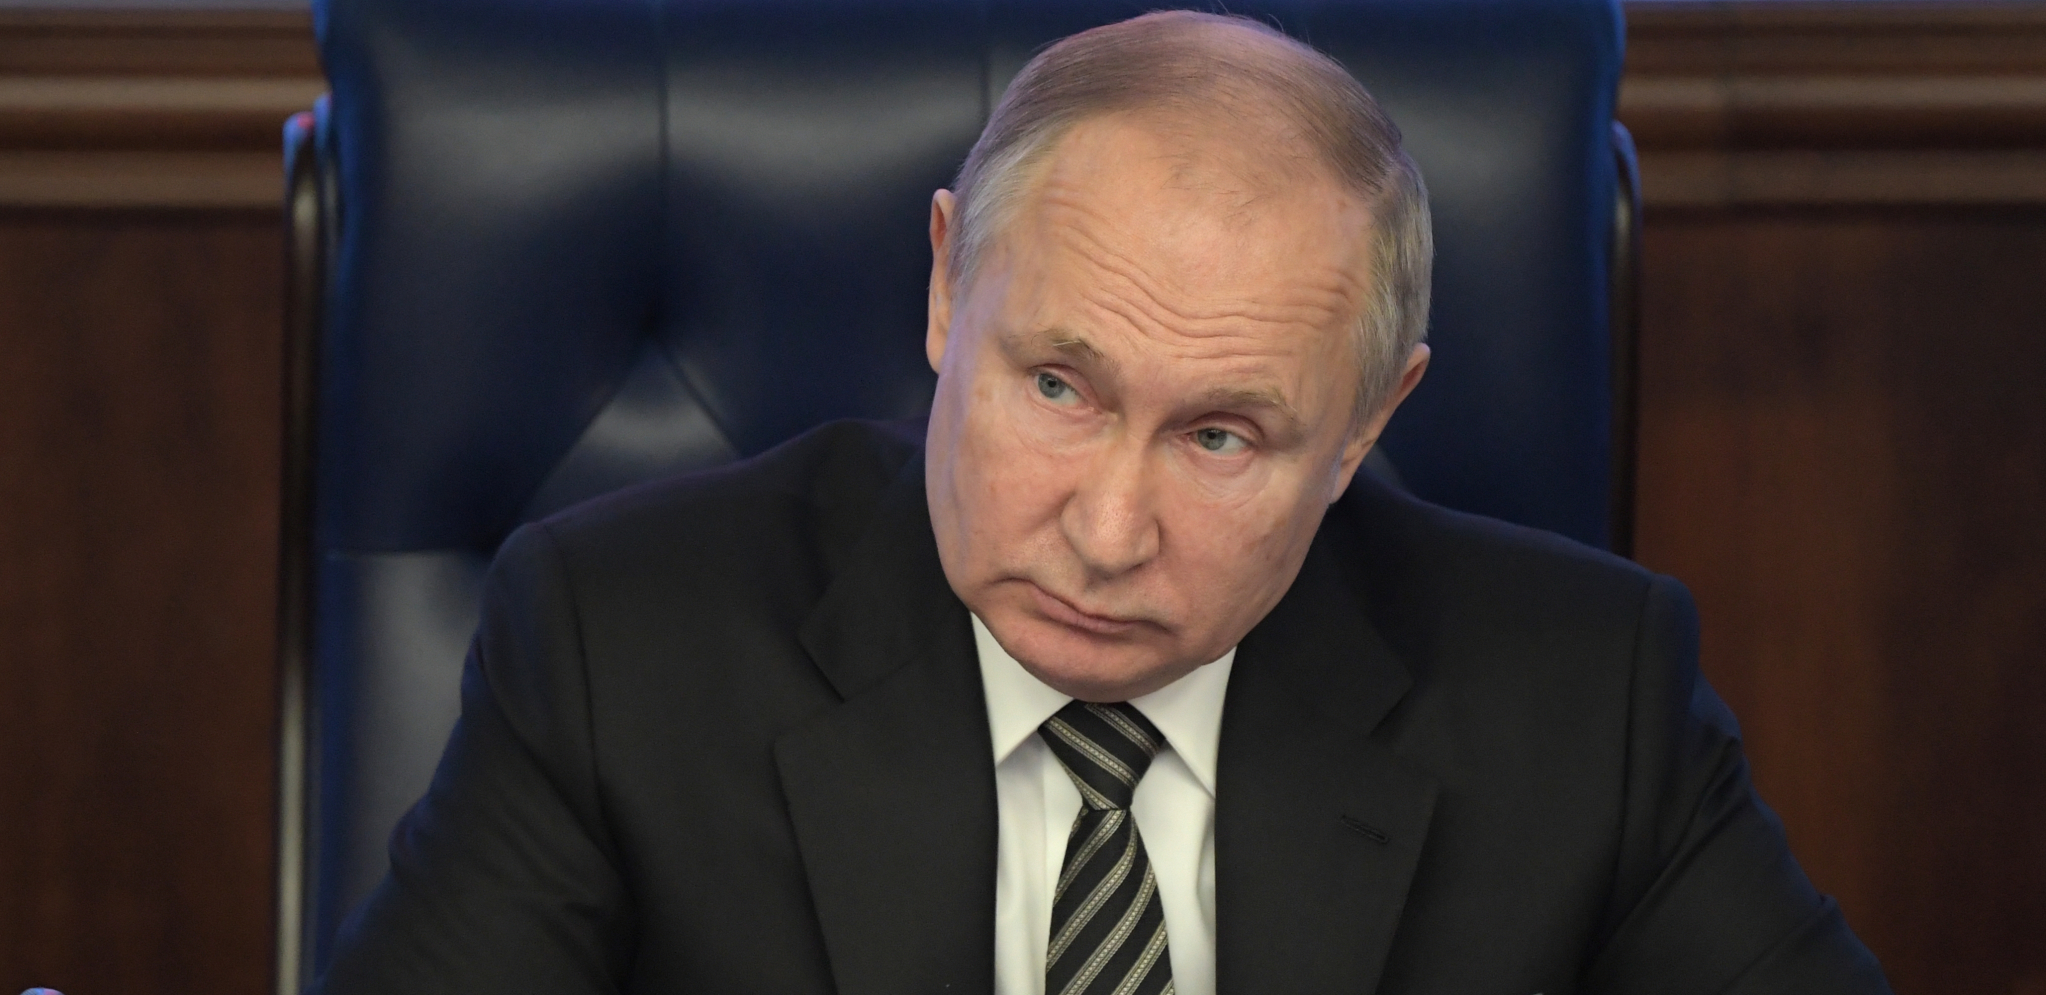 KAKVE VEZE IMA GASPROM SA TIM? Putin optužio SAD i Ukrajinu za poskupljenje gasa u Evropi